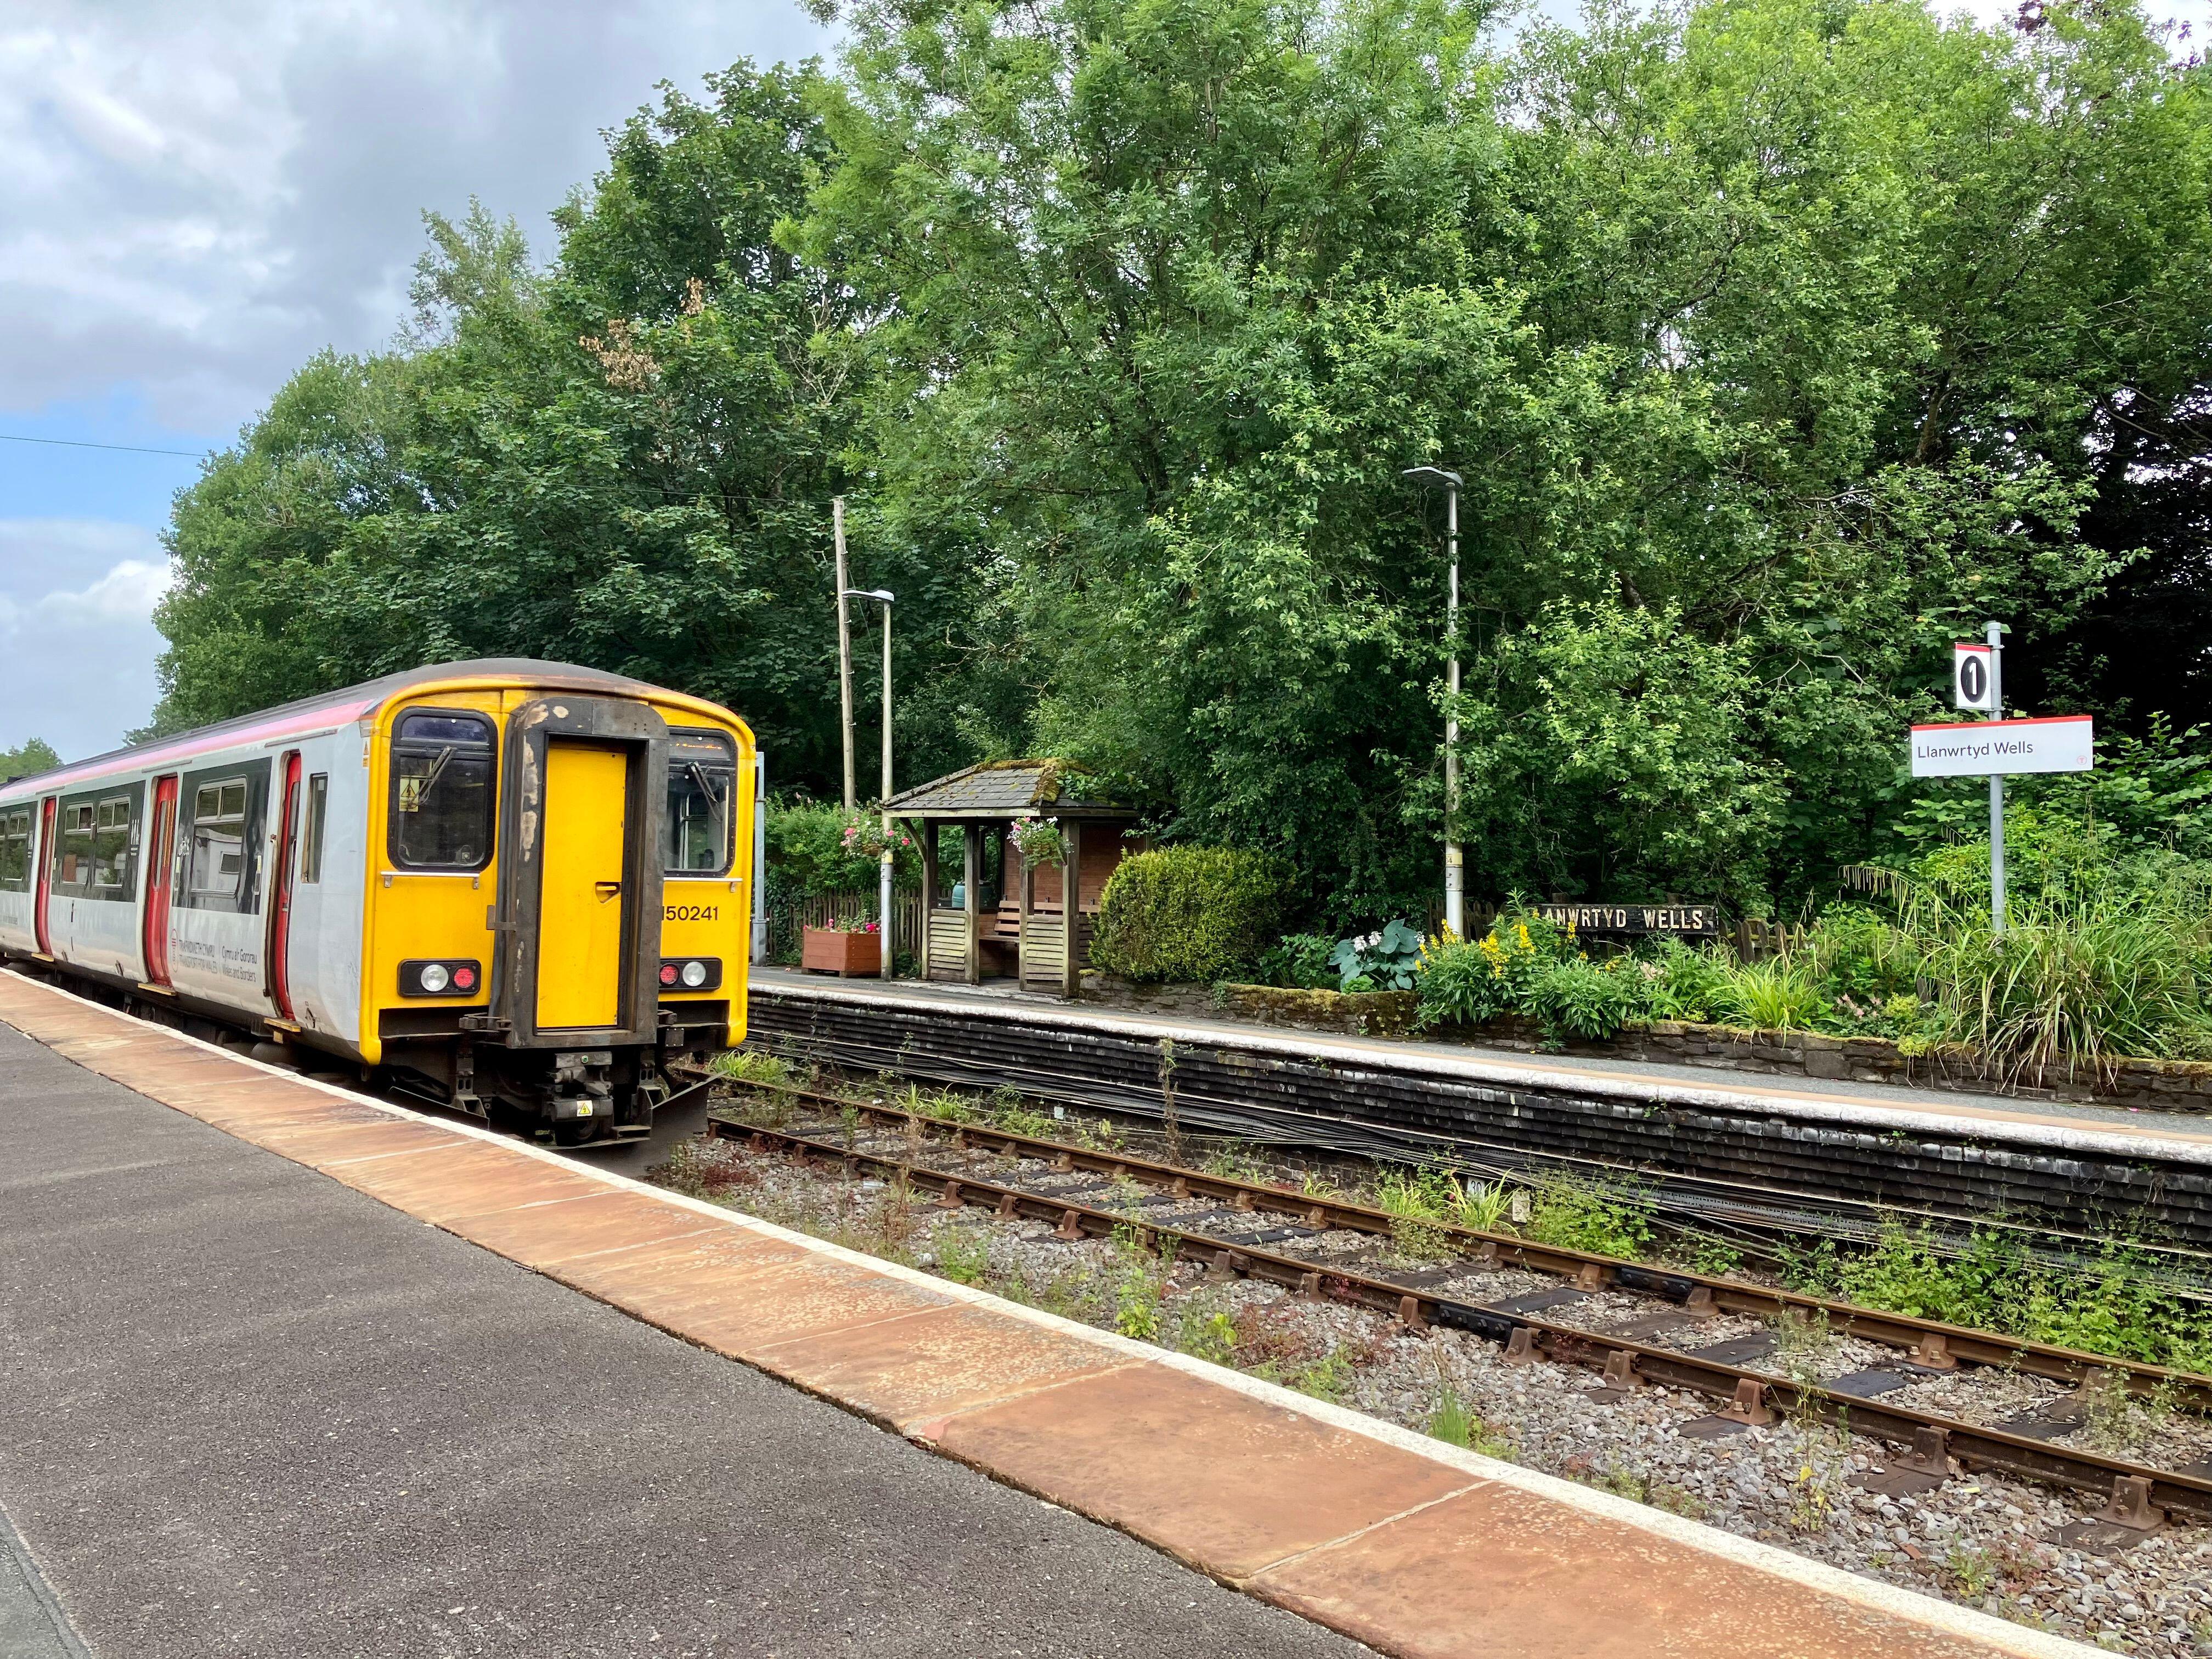 The train runs from Shrewsbury to Swansea